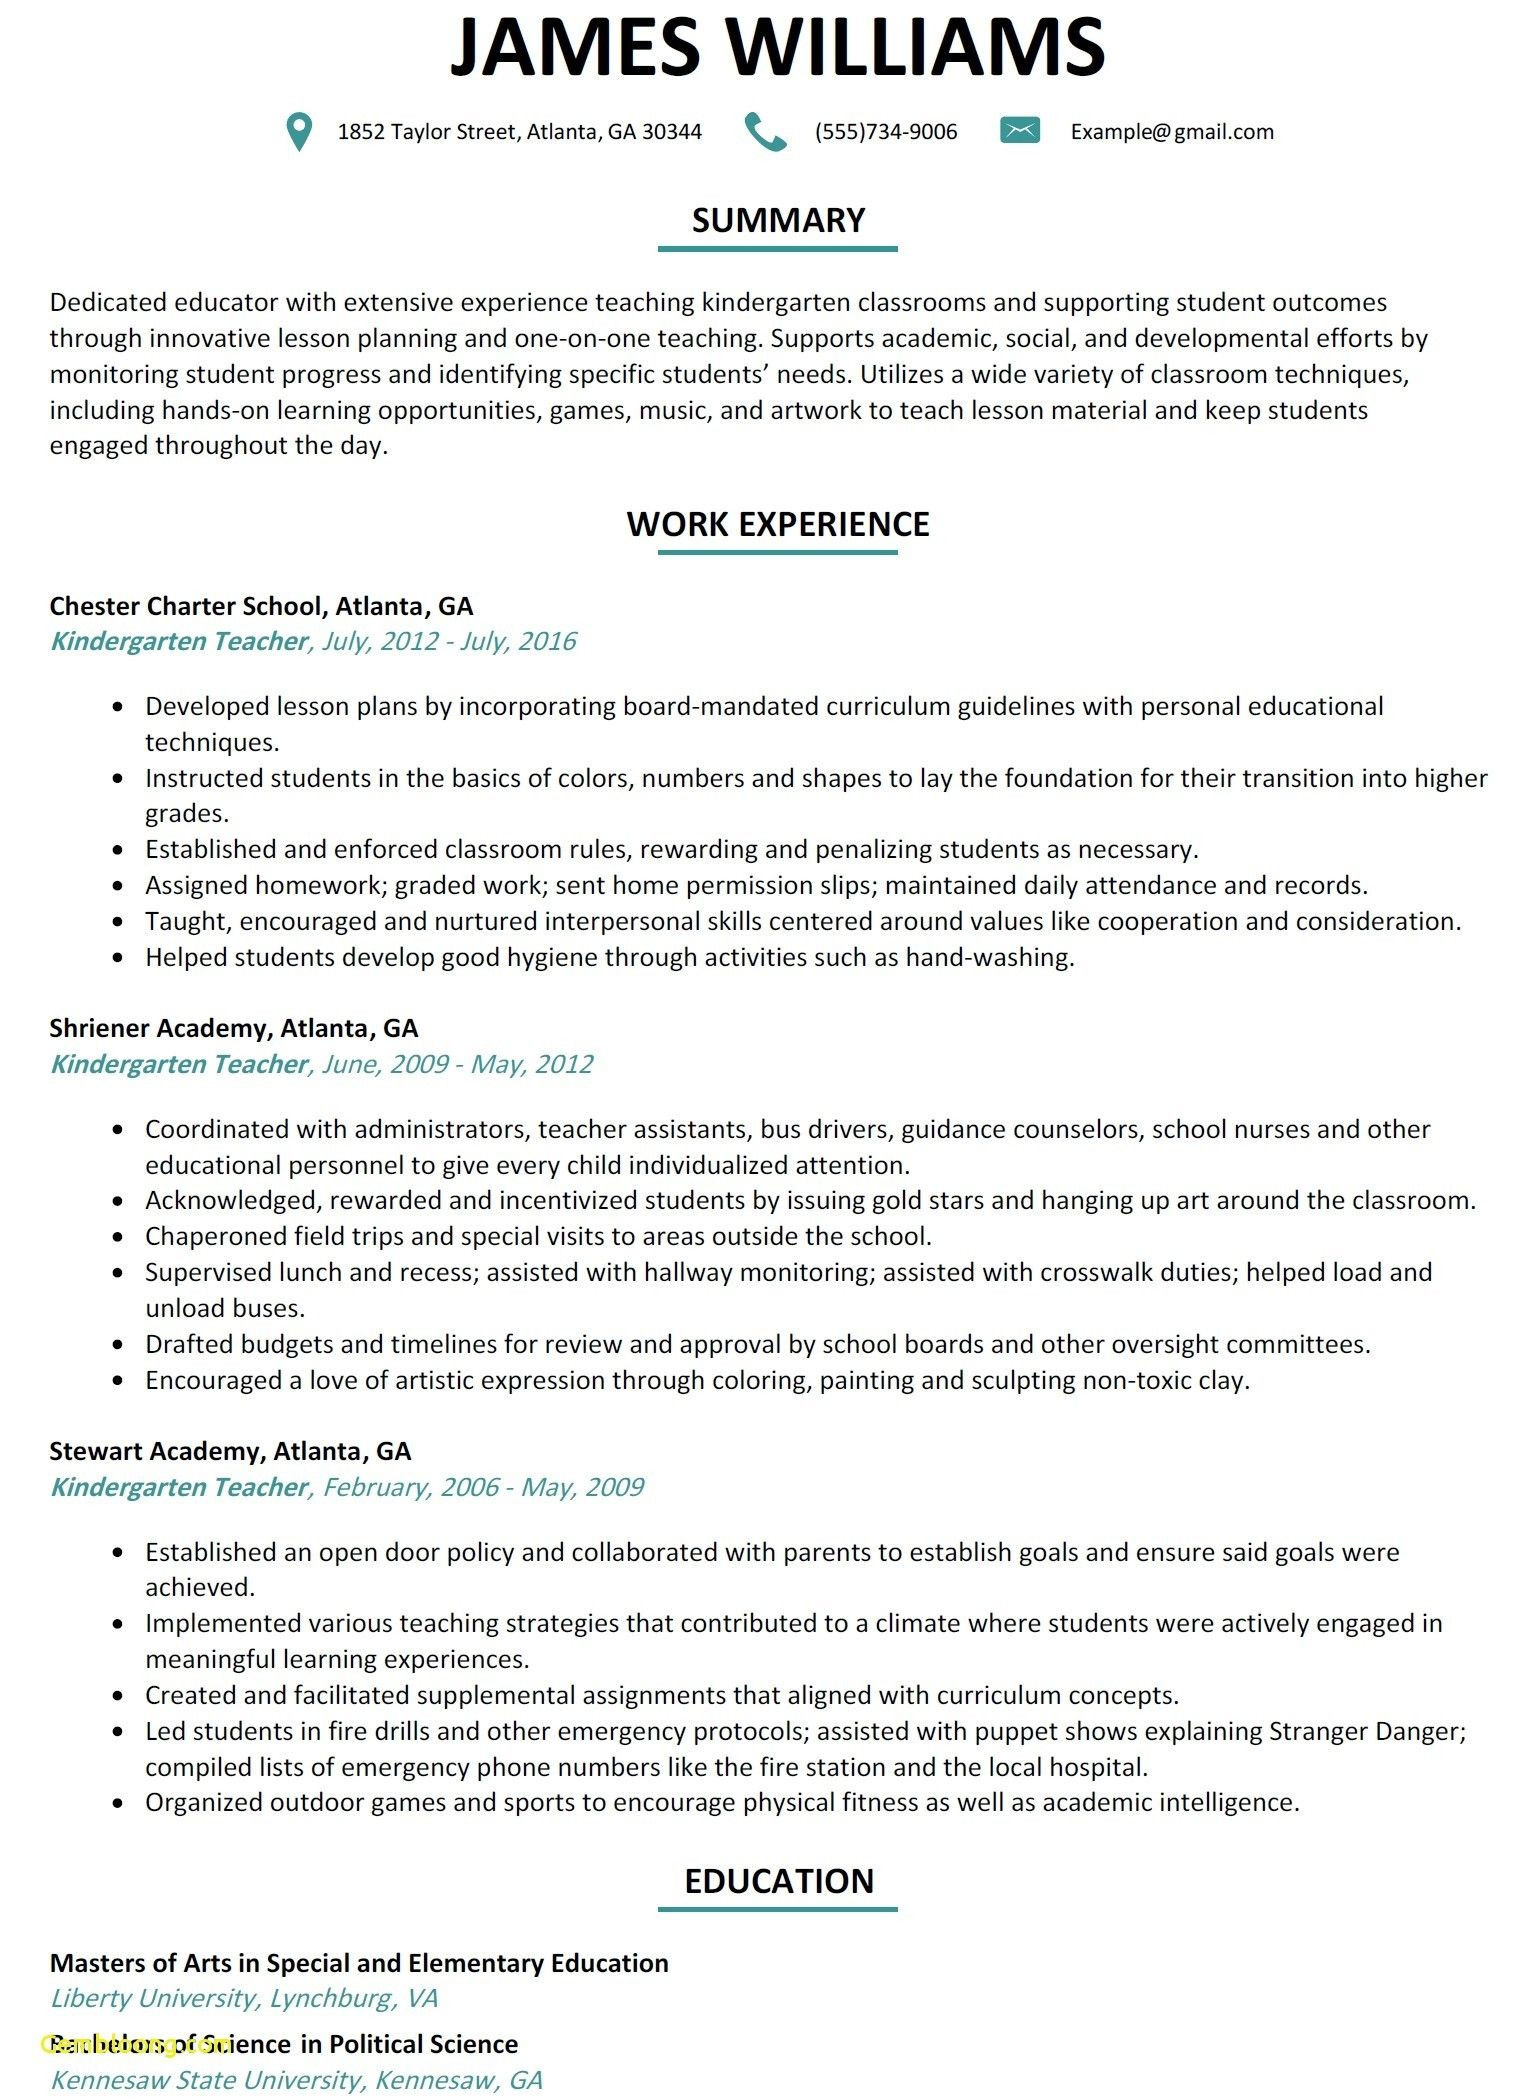 Sample Resume for Kindergarten Teacher Fresher Resume format Kindergarten Teacher – Resume Templates Teaching …